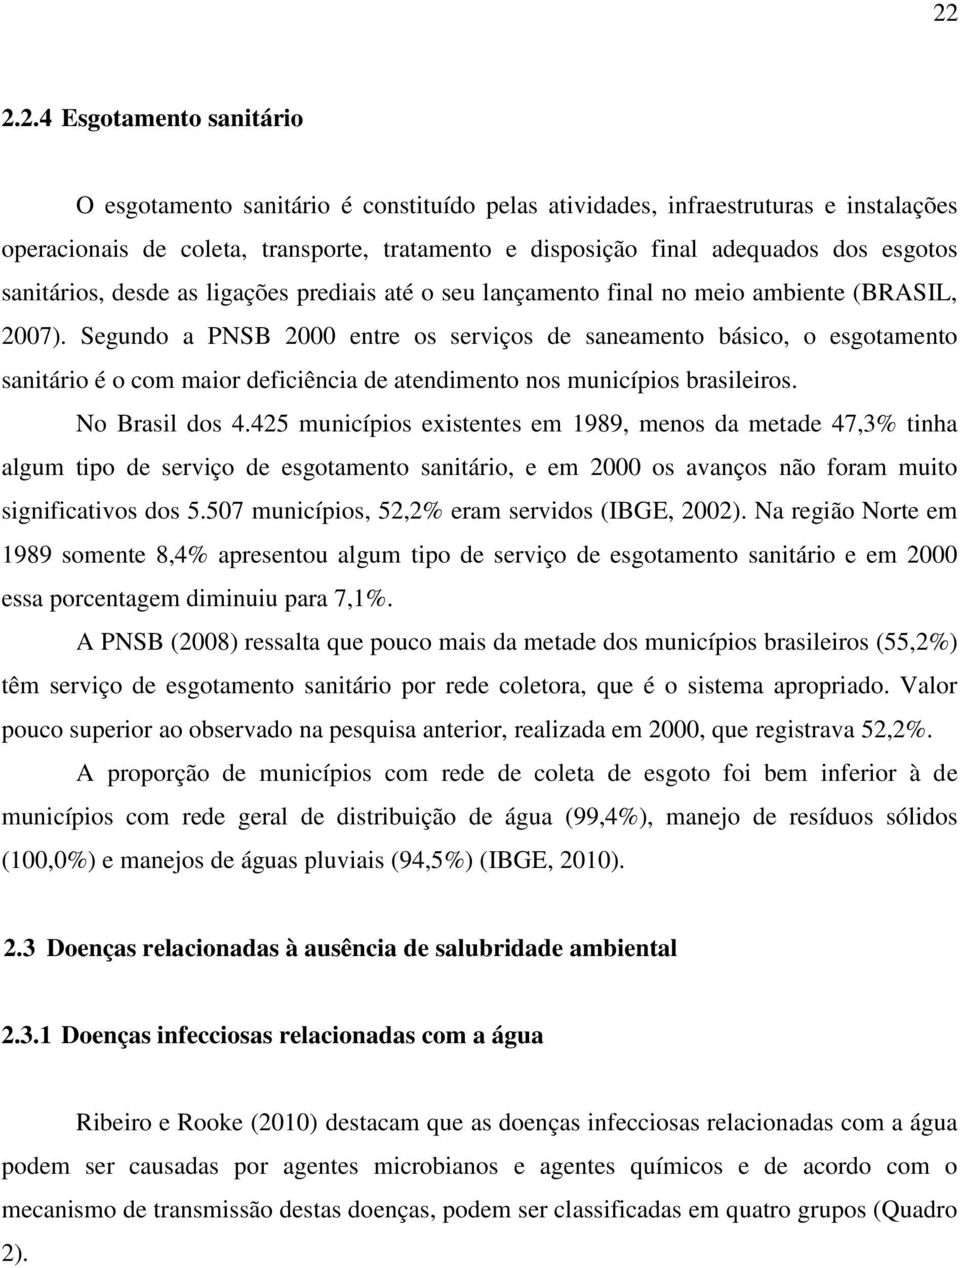 Segundo a PNSB 2000 entre os serviços de saneamento básico, o esgotamento sanitário é o com maior deficiência de atendimento nos municípios brasileiros. No Brasil dos 4.